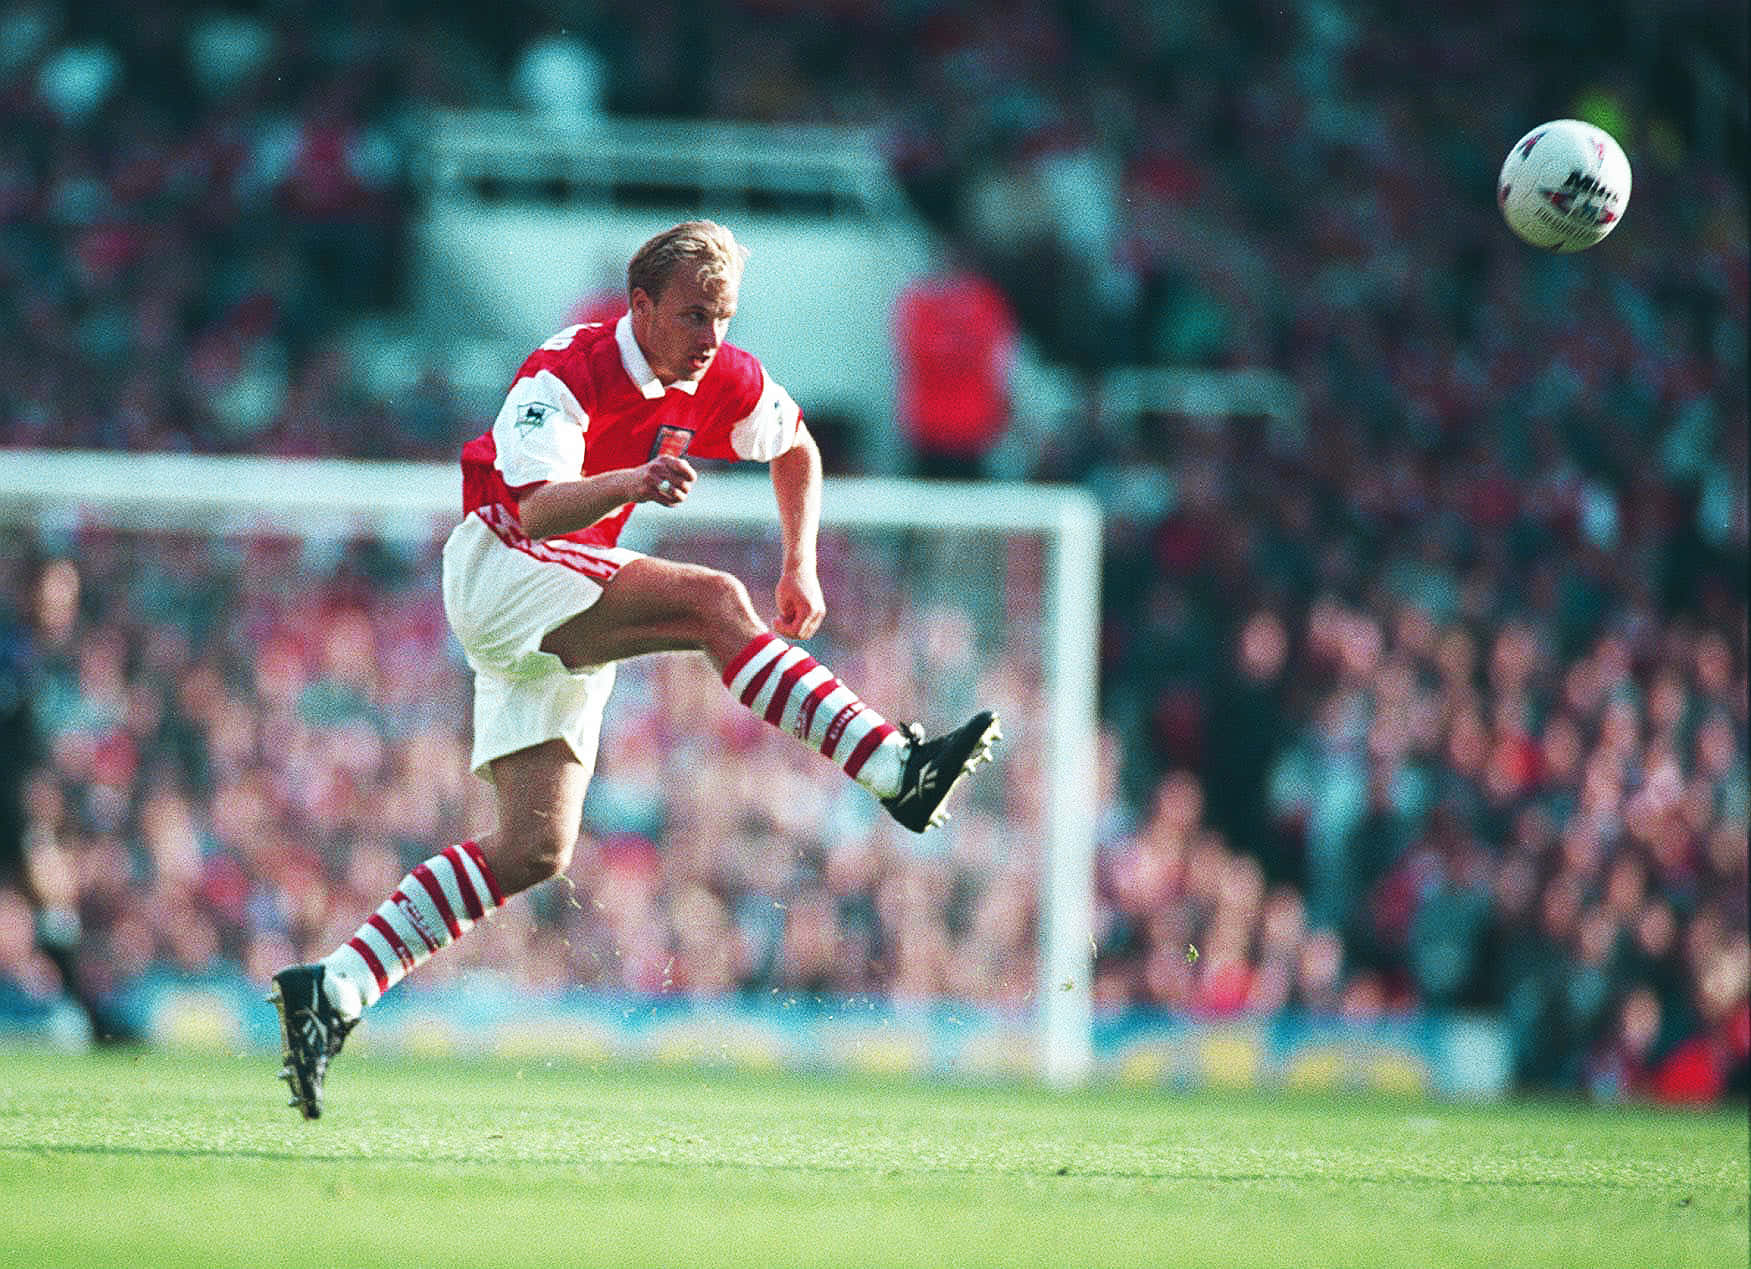 Dennis Bergkamp Kicking Ball Arsenal VS. Southampton Wallpaper